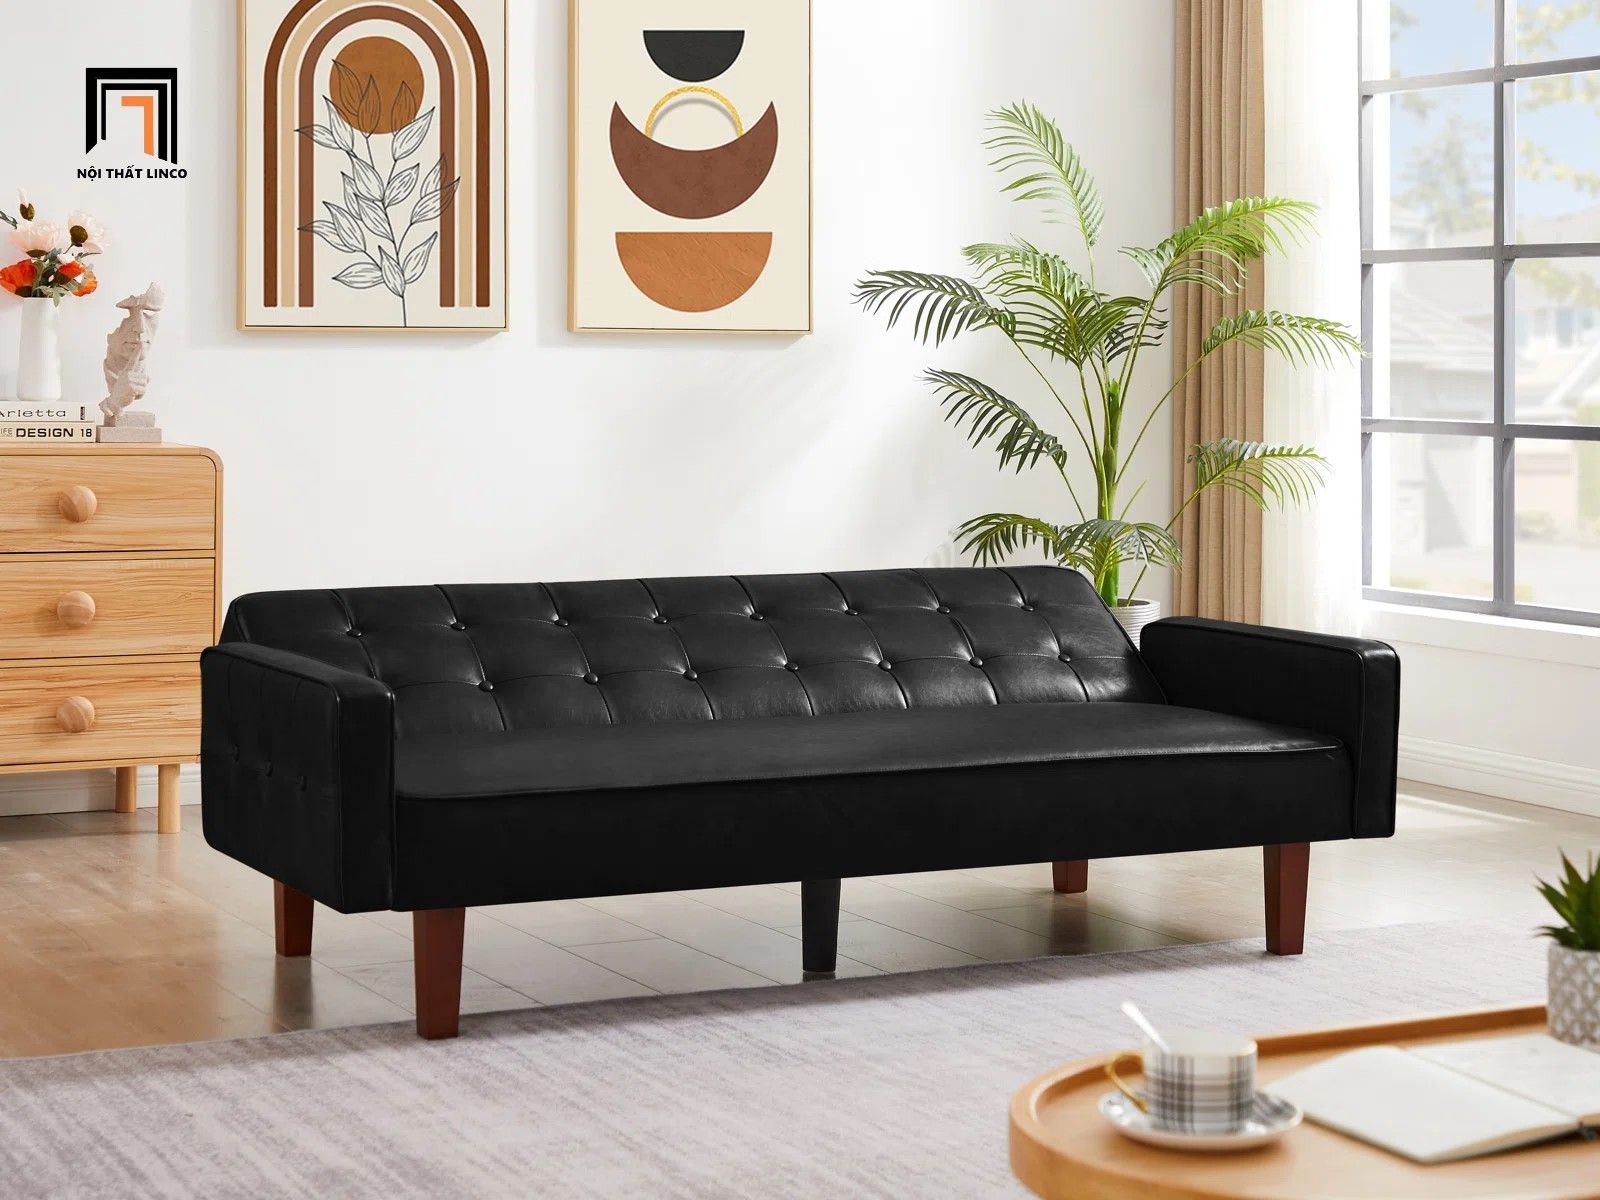  Ghế sofa giường thông minh GB21 Eloy dài 2m da giả 